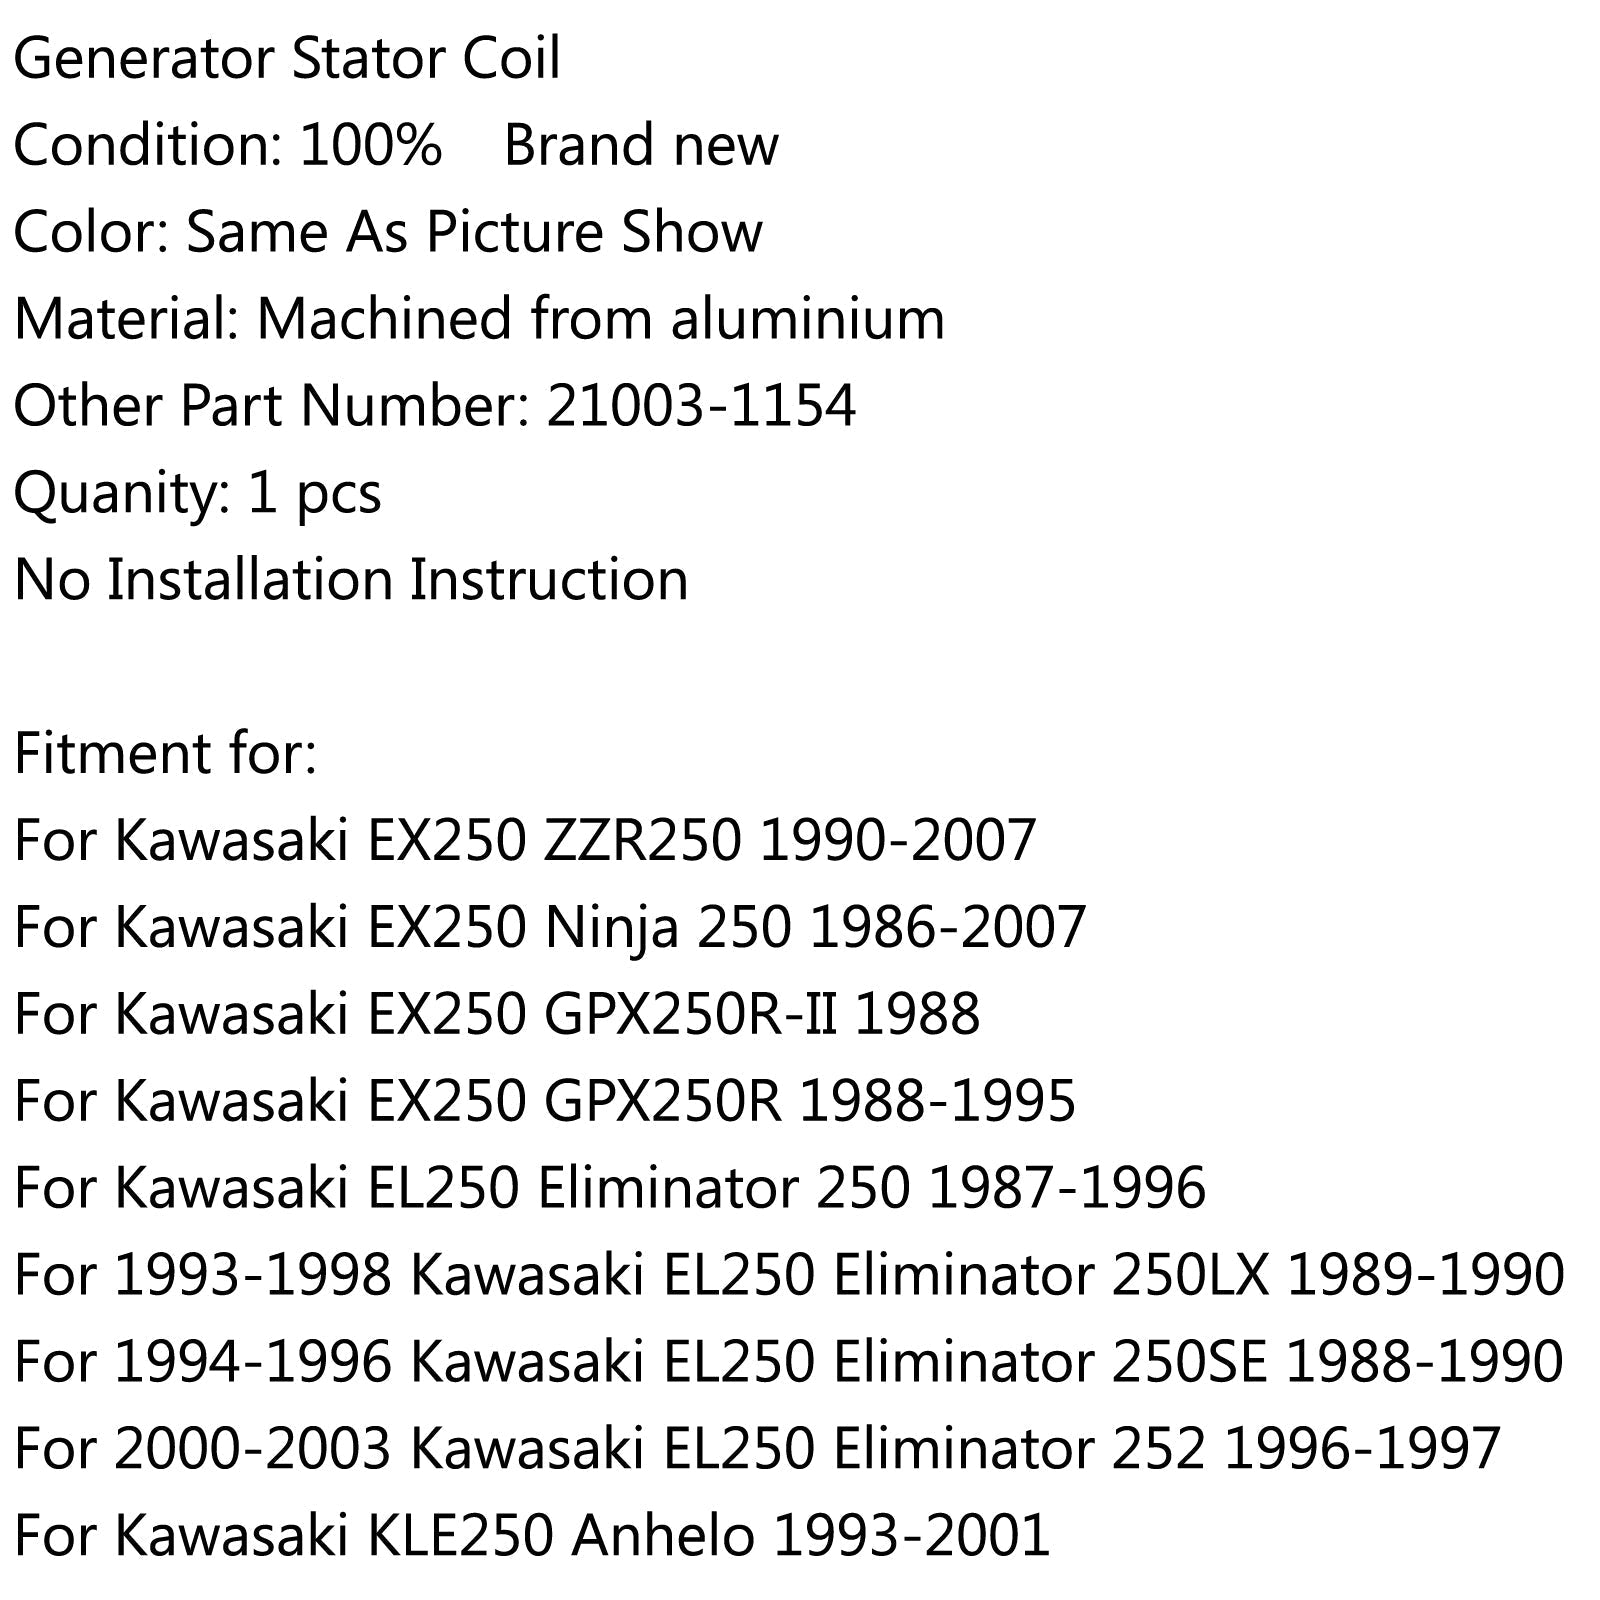 Bobine de stator de générateur pour Kawasaki EX250 Ninja 250 (86-2007) ZZR250 (90-2007) Générique